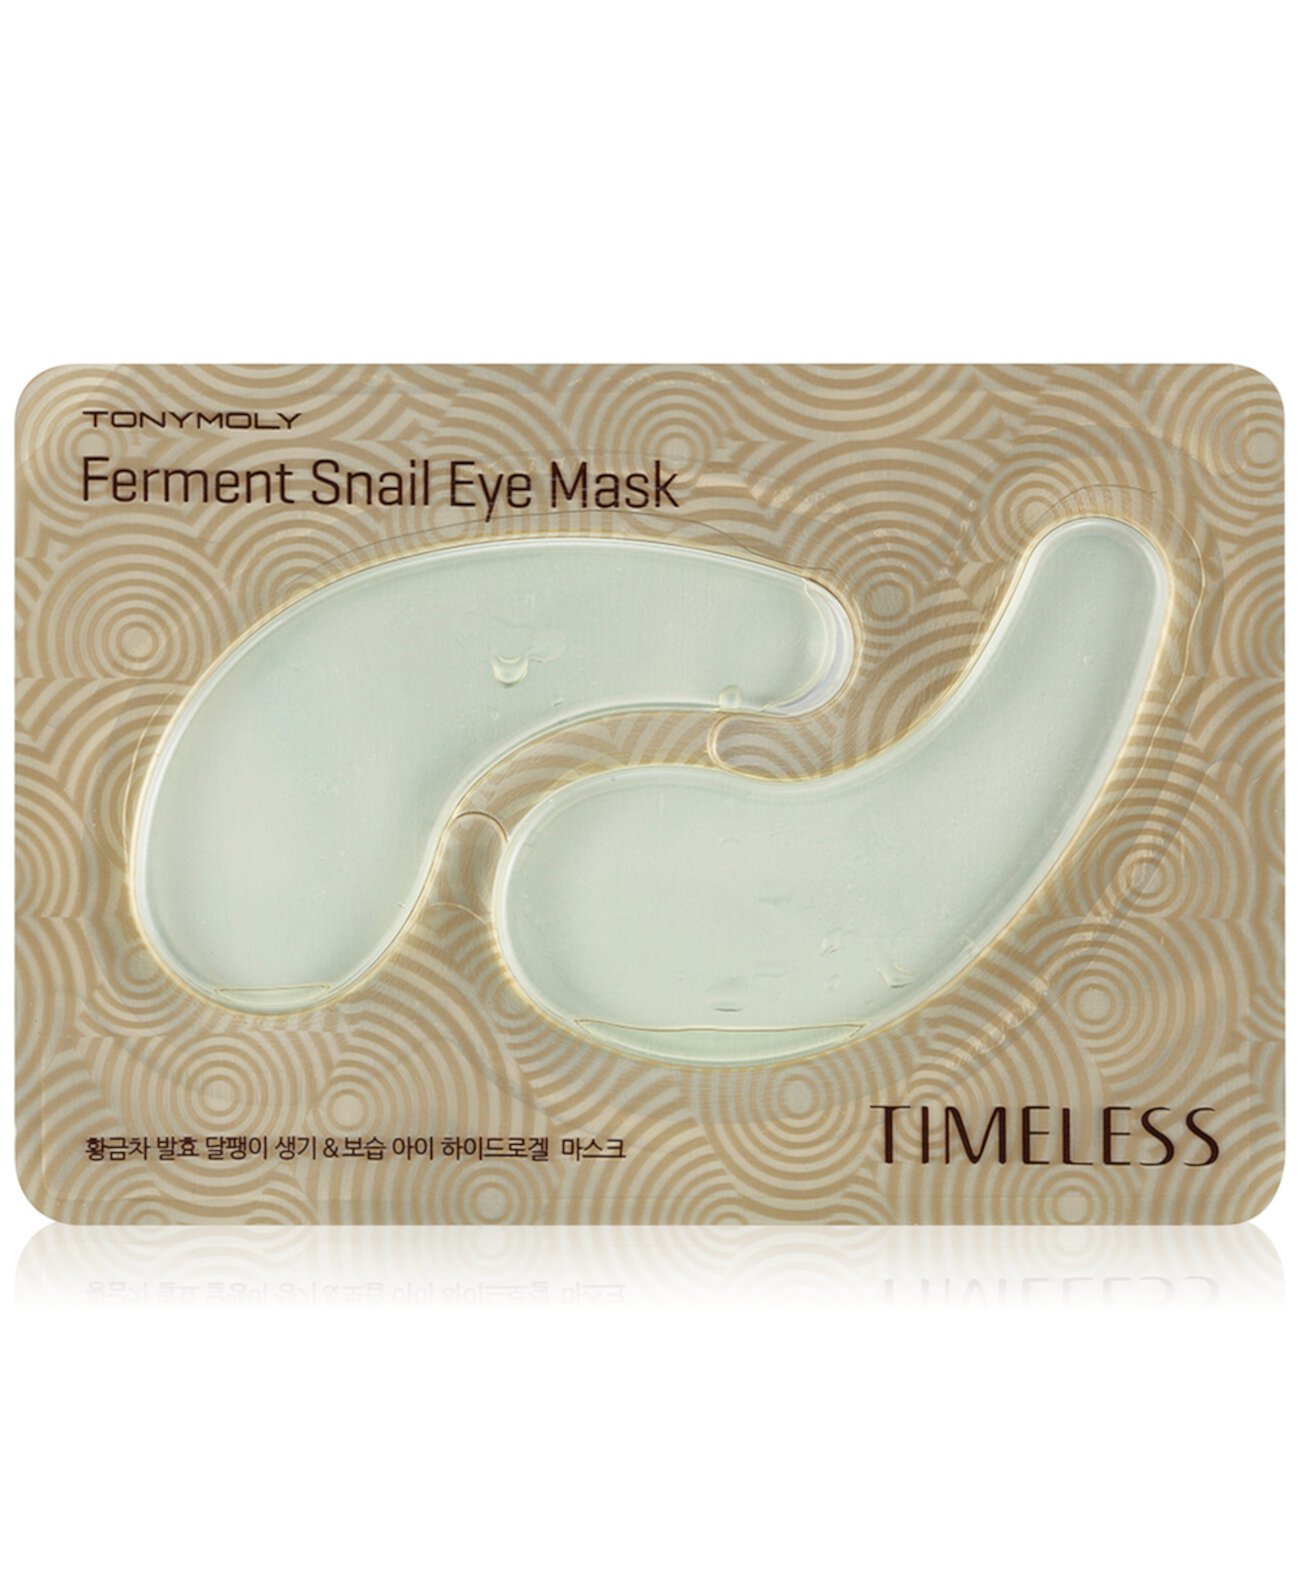 Маска для глаз Timeless Ferment Snail Eye Mask TONYMOLY